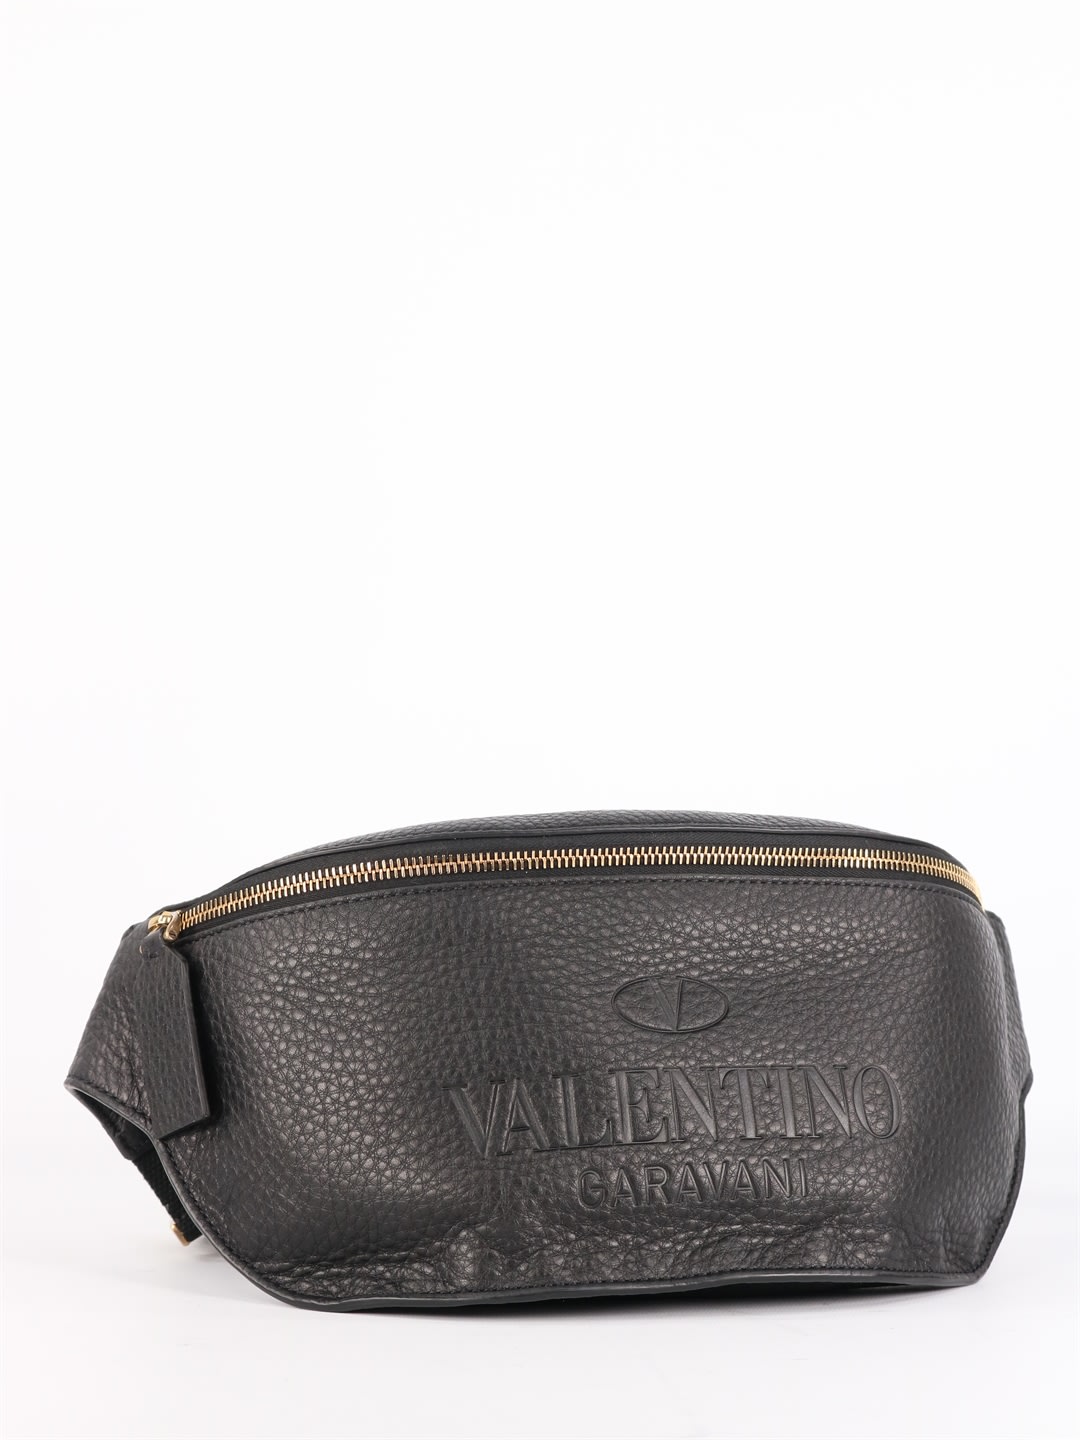 Valentino Garavani Belt Bag Valentino Garavani Identity